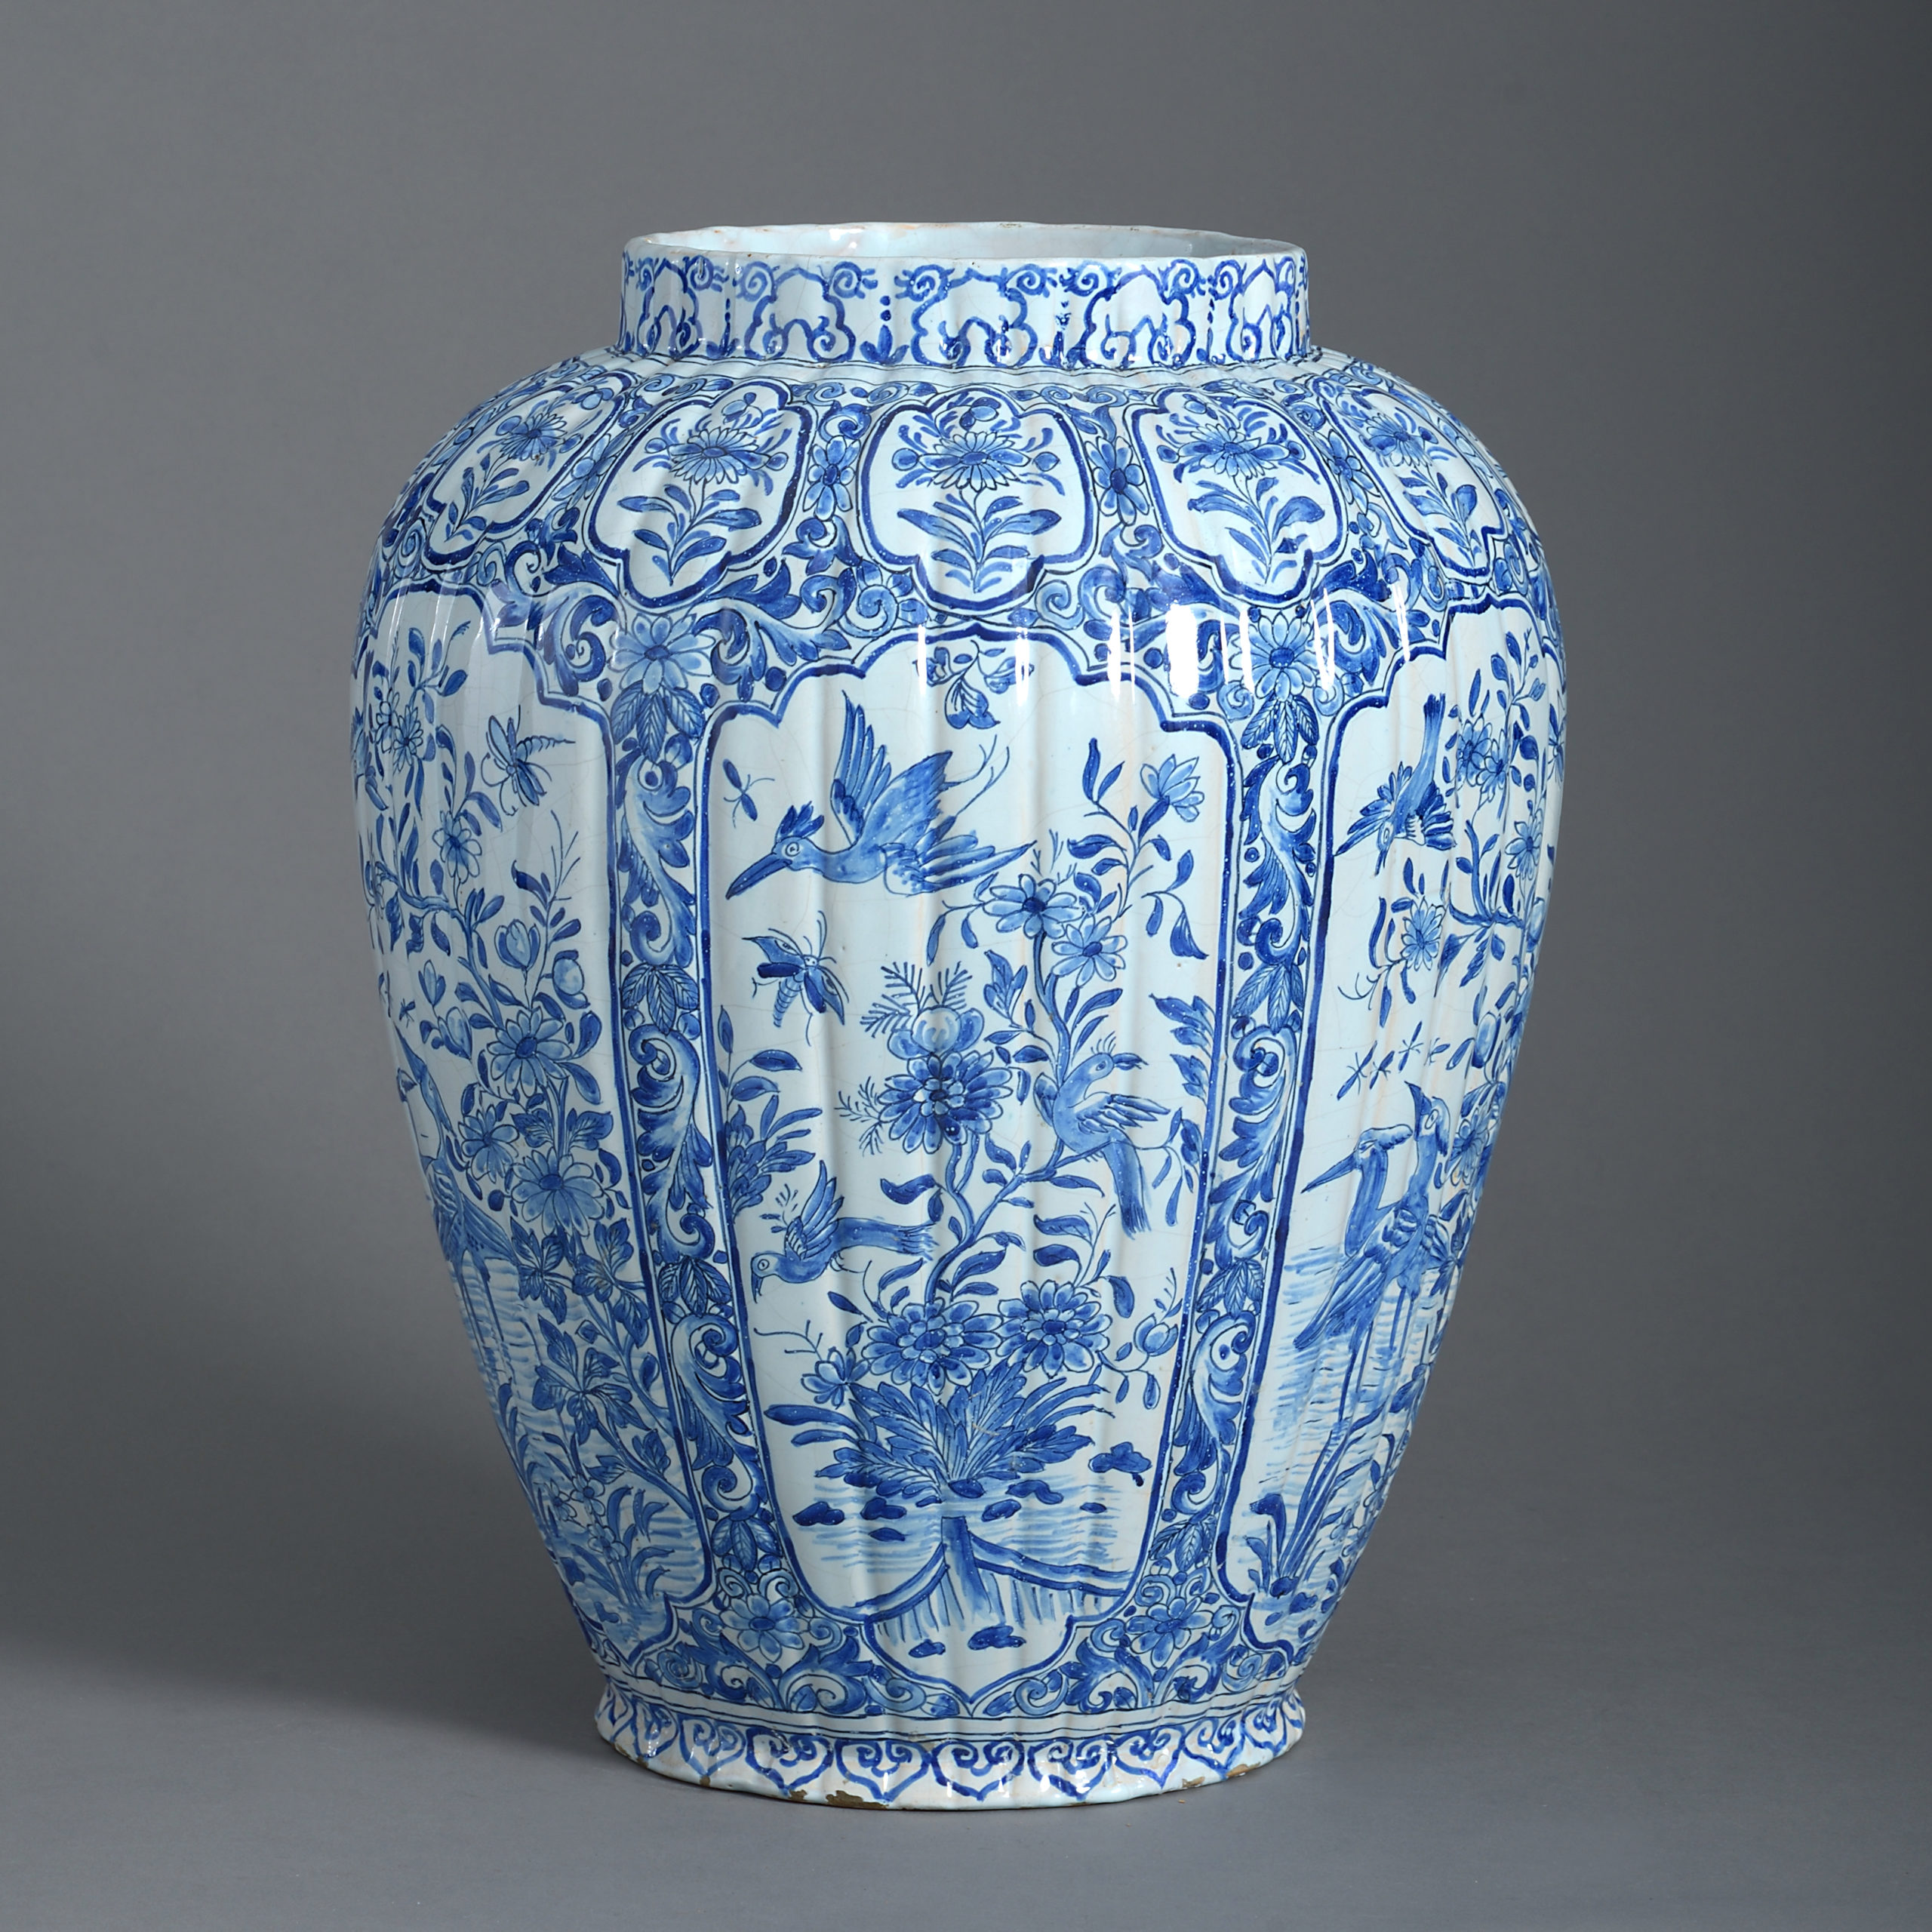 Century blue. Мейсенская голубая ваза. Вазы Делфт в интерьере. Дельфт вазы 17 века. Королевская ваза.